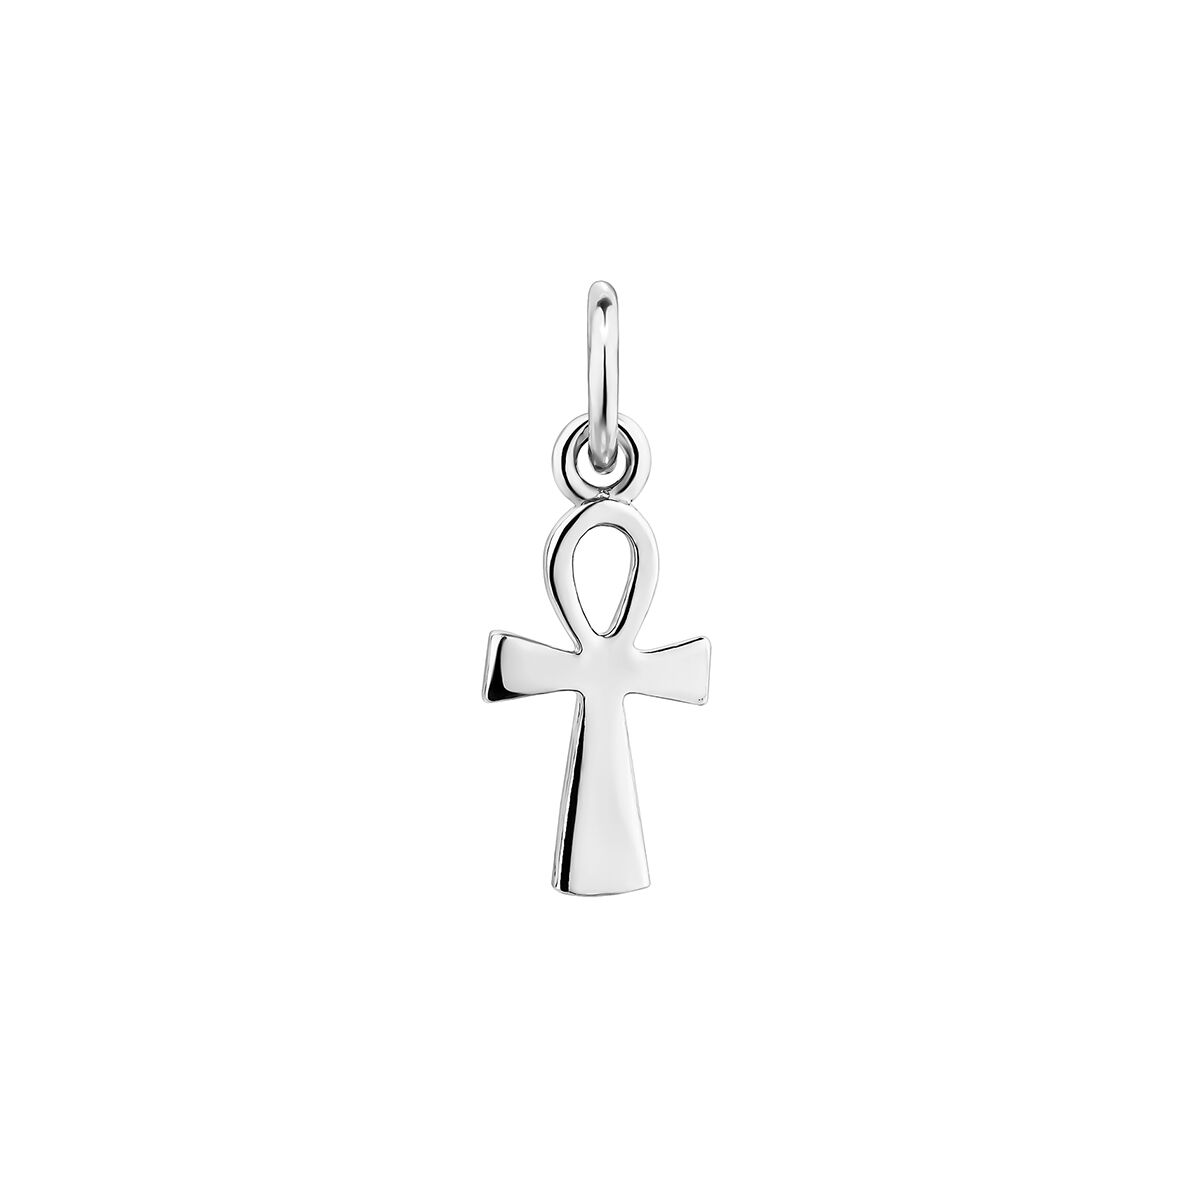 Charm cruz ansada plata , J04900-01, hi-res